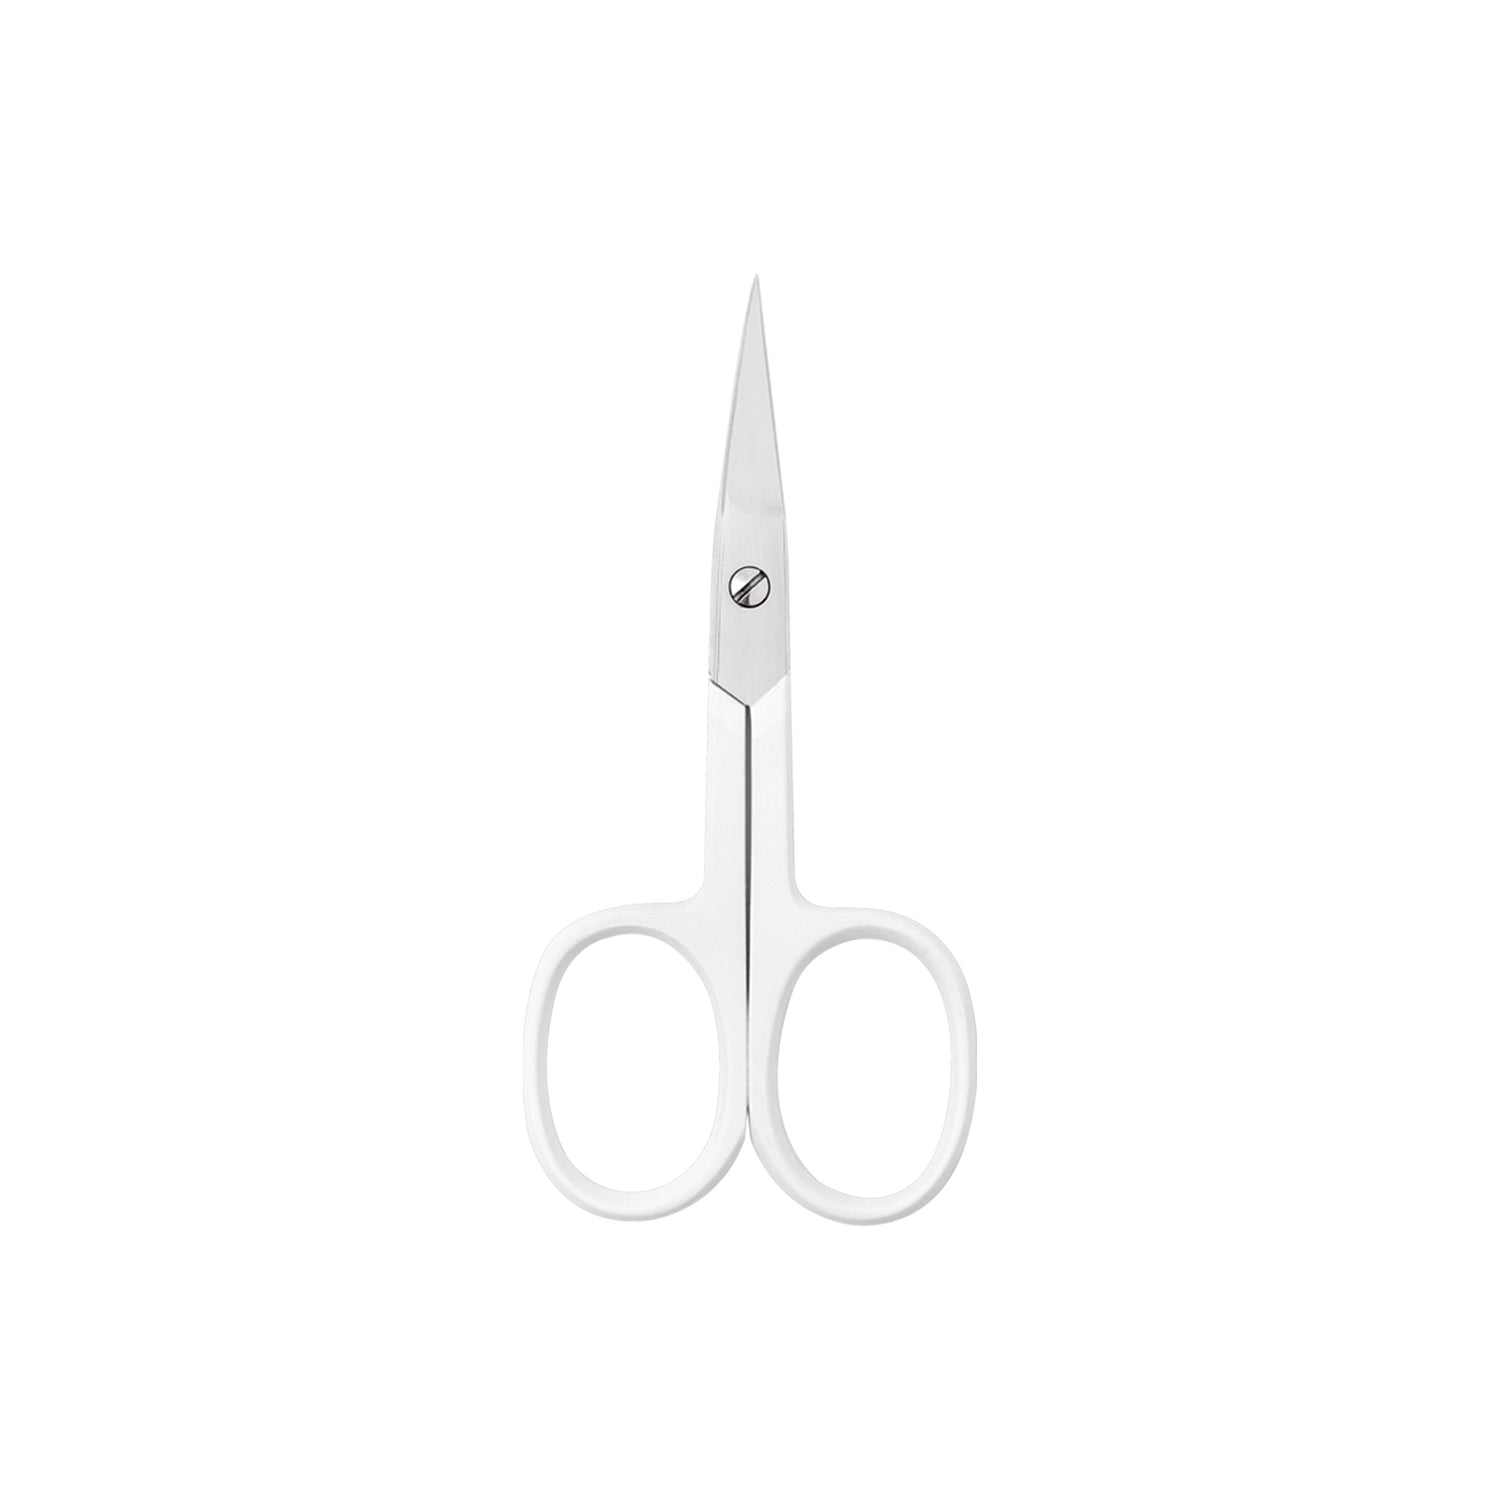 DARKNESS Stainless Steel Beauty Scissors